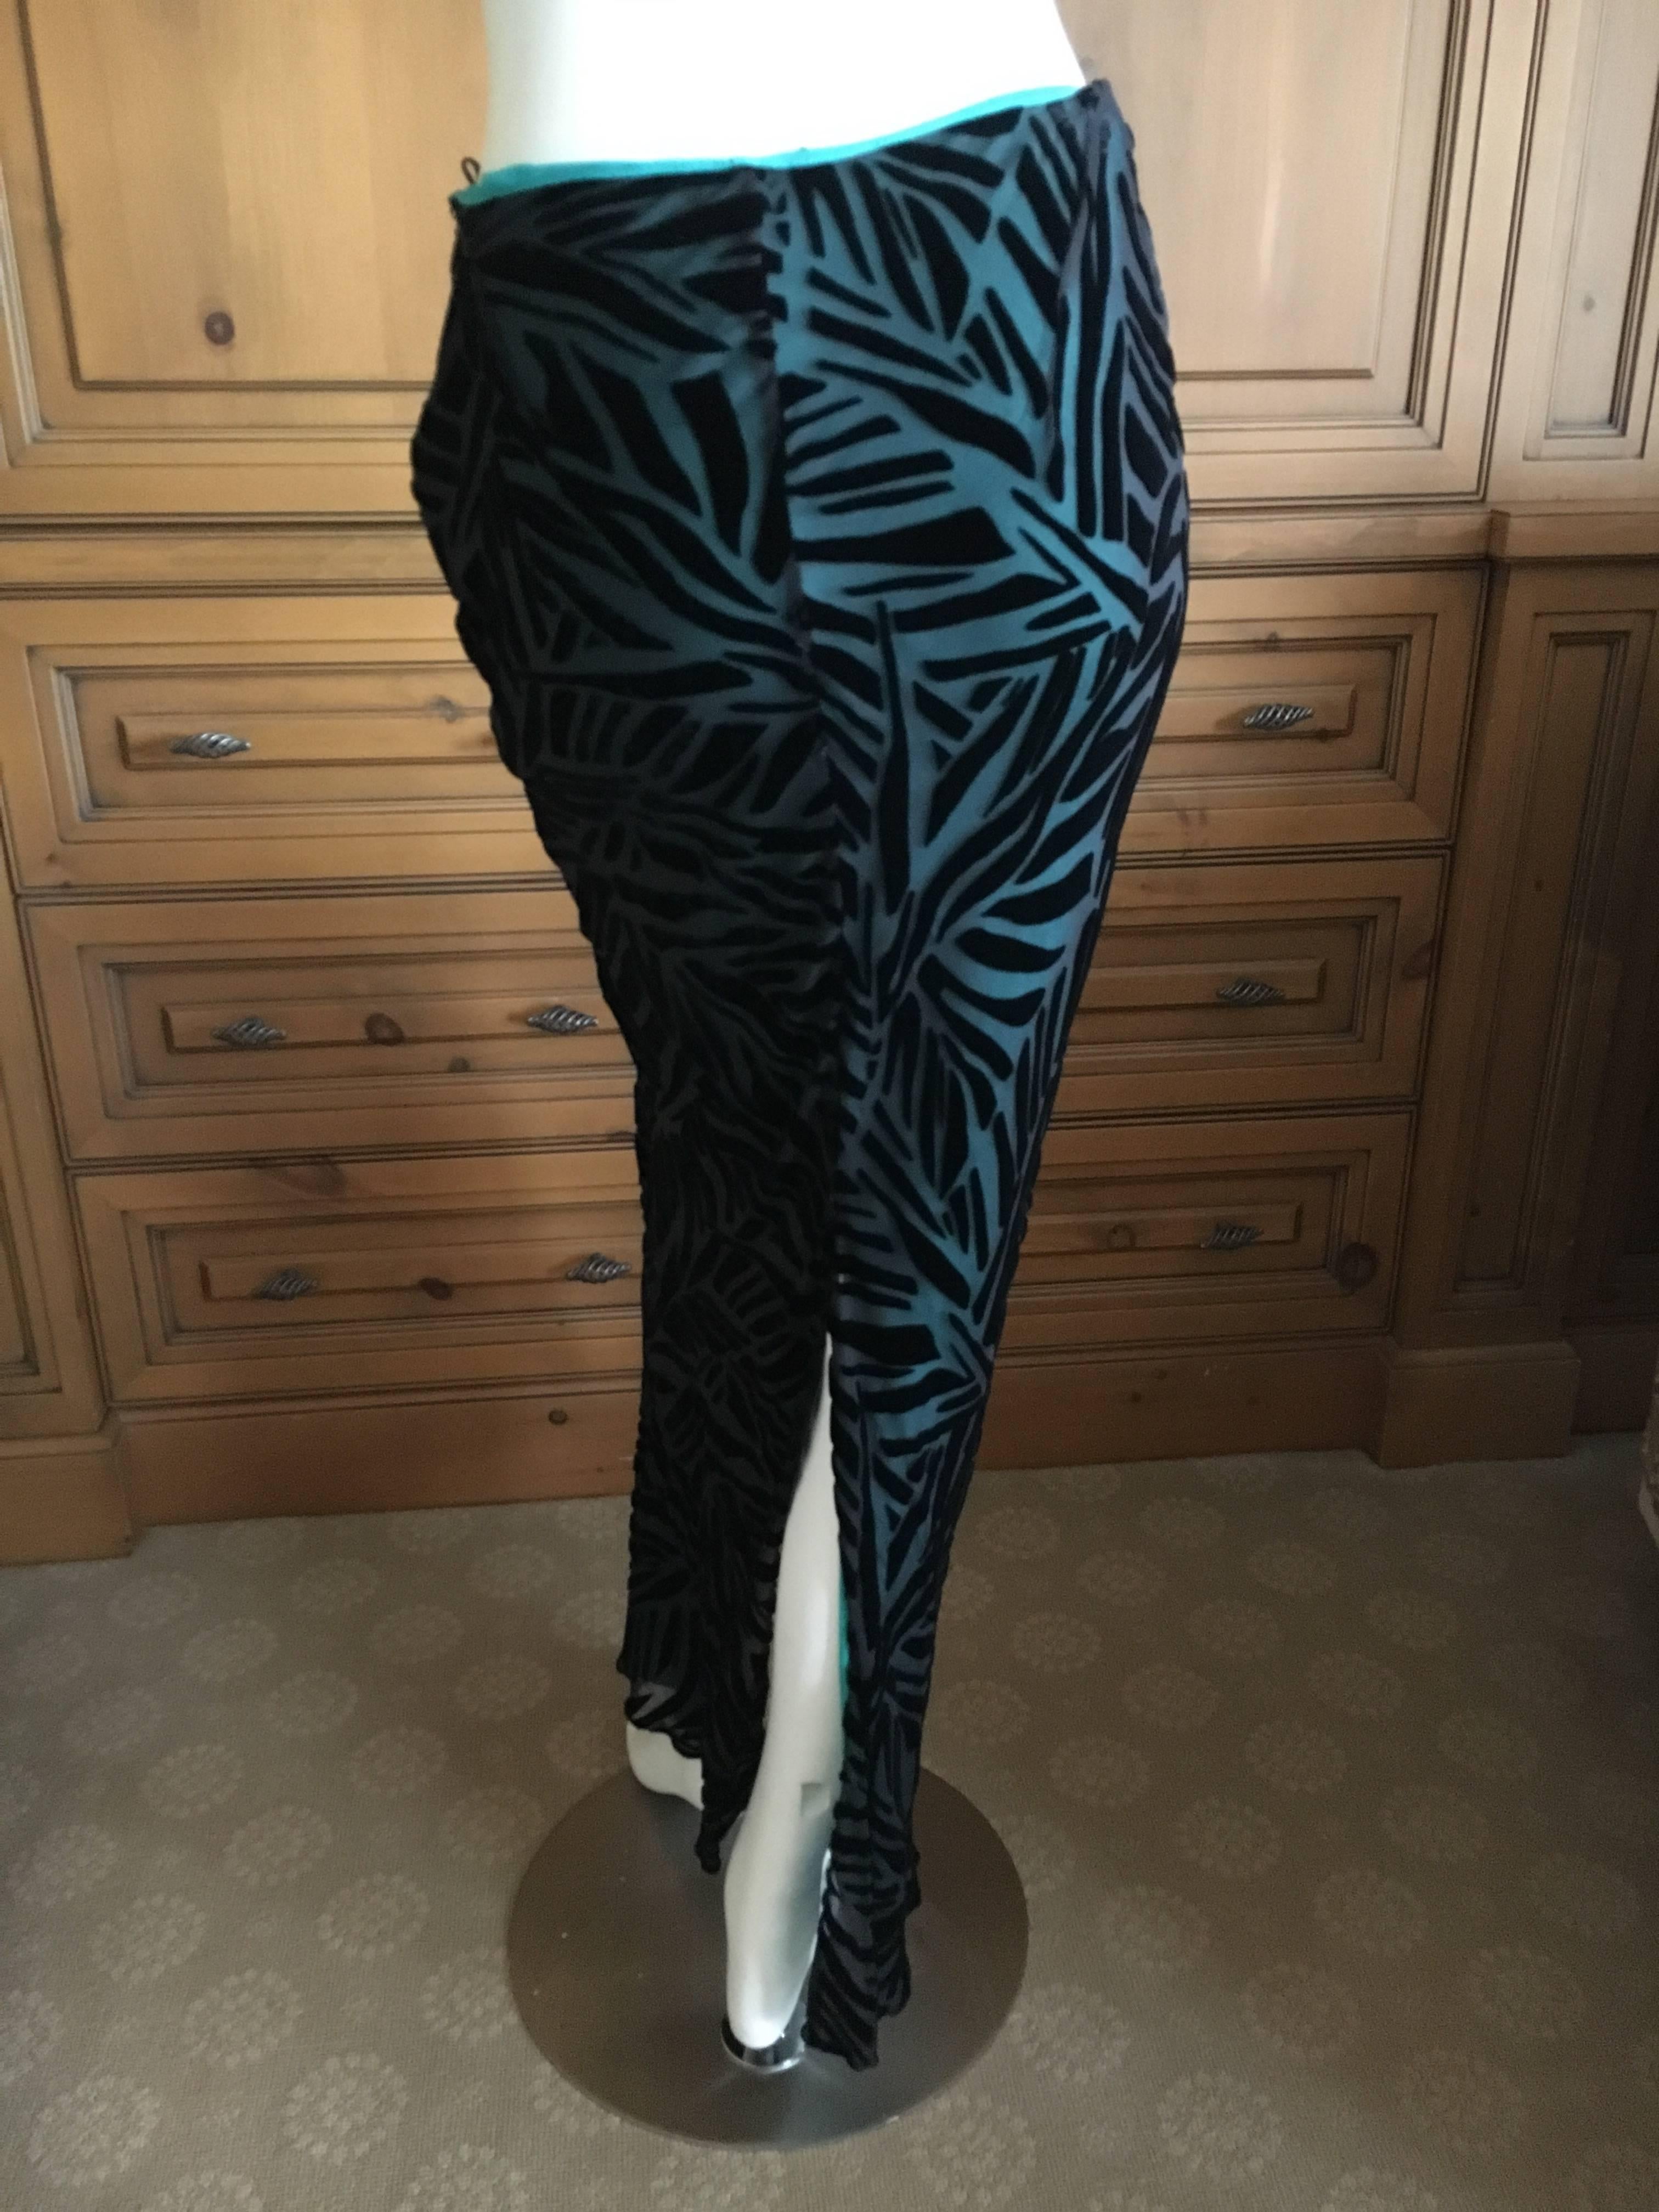 Gianni Versace Vintage Devore Velvet Skirt
Size 40